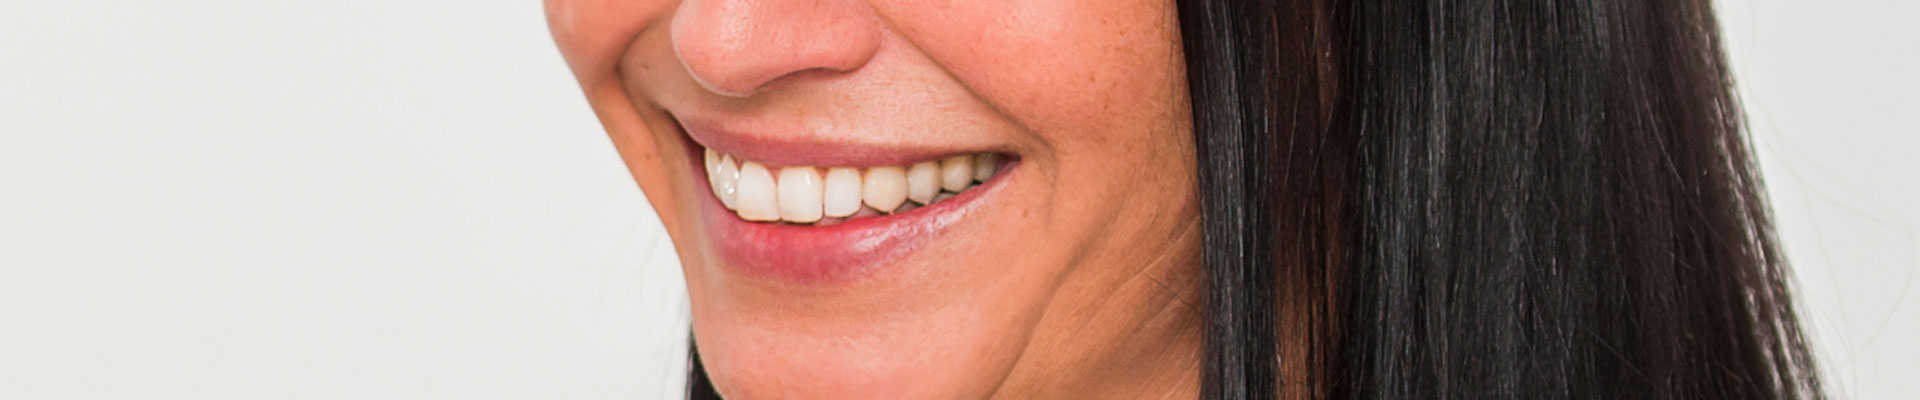 Patientin mit schönen Zähnen lächelnd